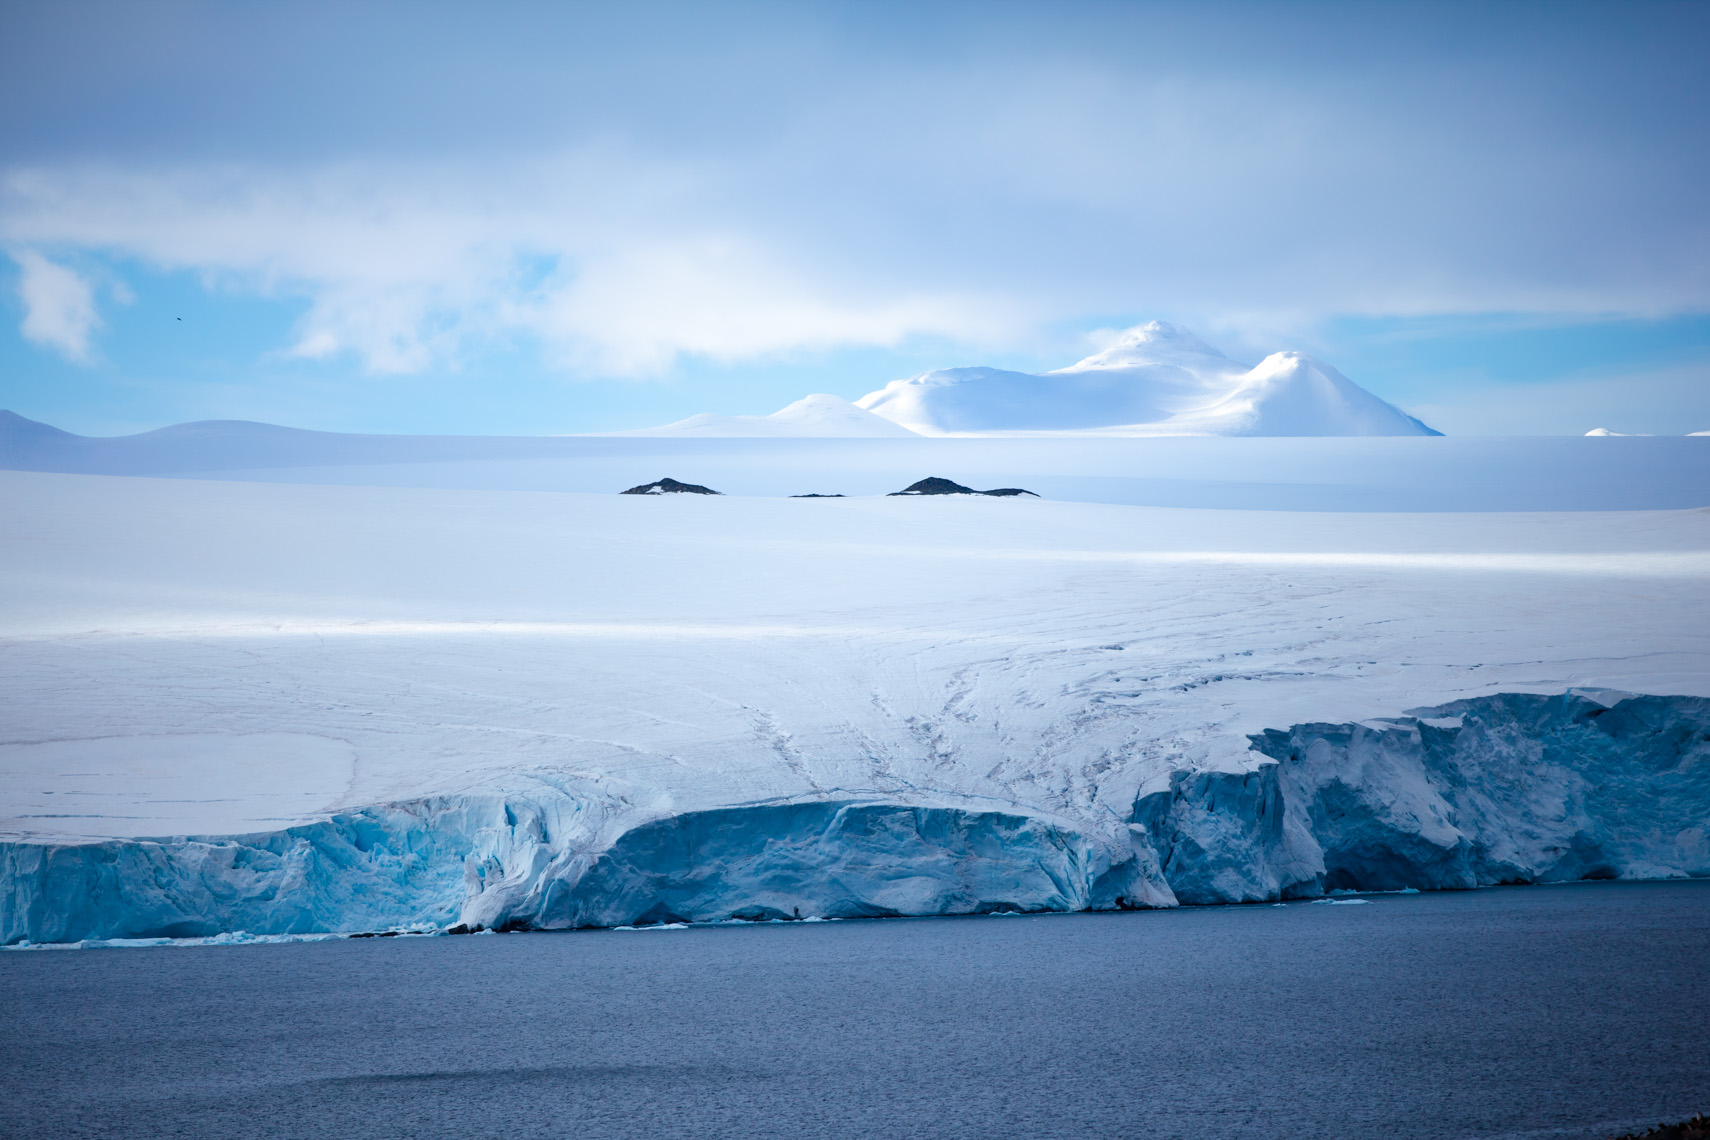 Антарктическое государство. Покровные ледники Антарктиды. Антарктида (материк). Северный полюс Арктика и Антарктика. Северный полюс, Арктика и Южный полюс, Антарктида.